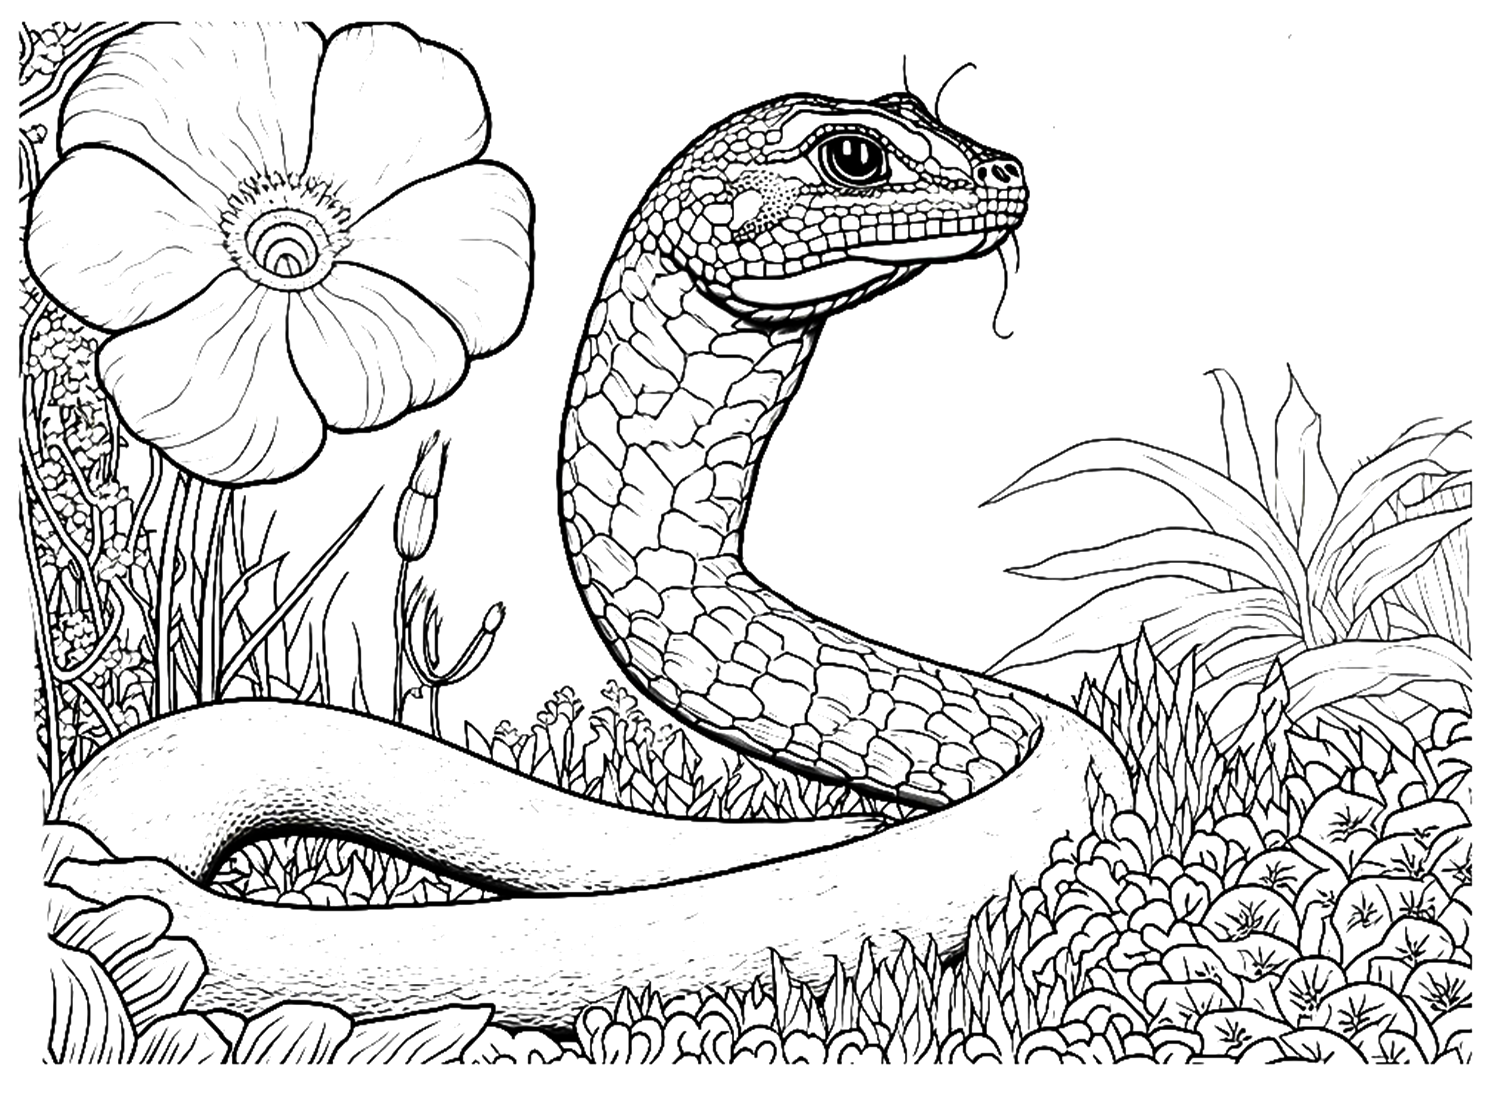 Python-kleurplaat voor volwassenen van Python